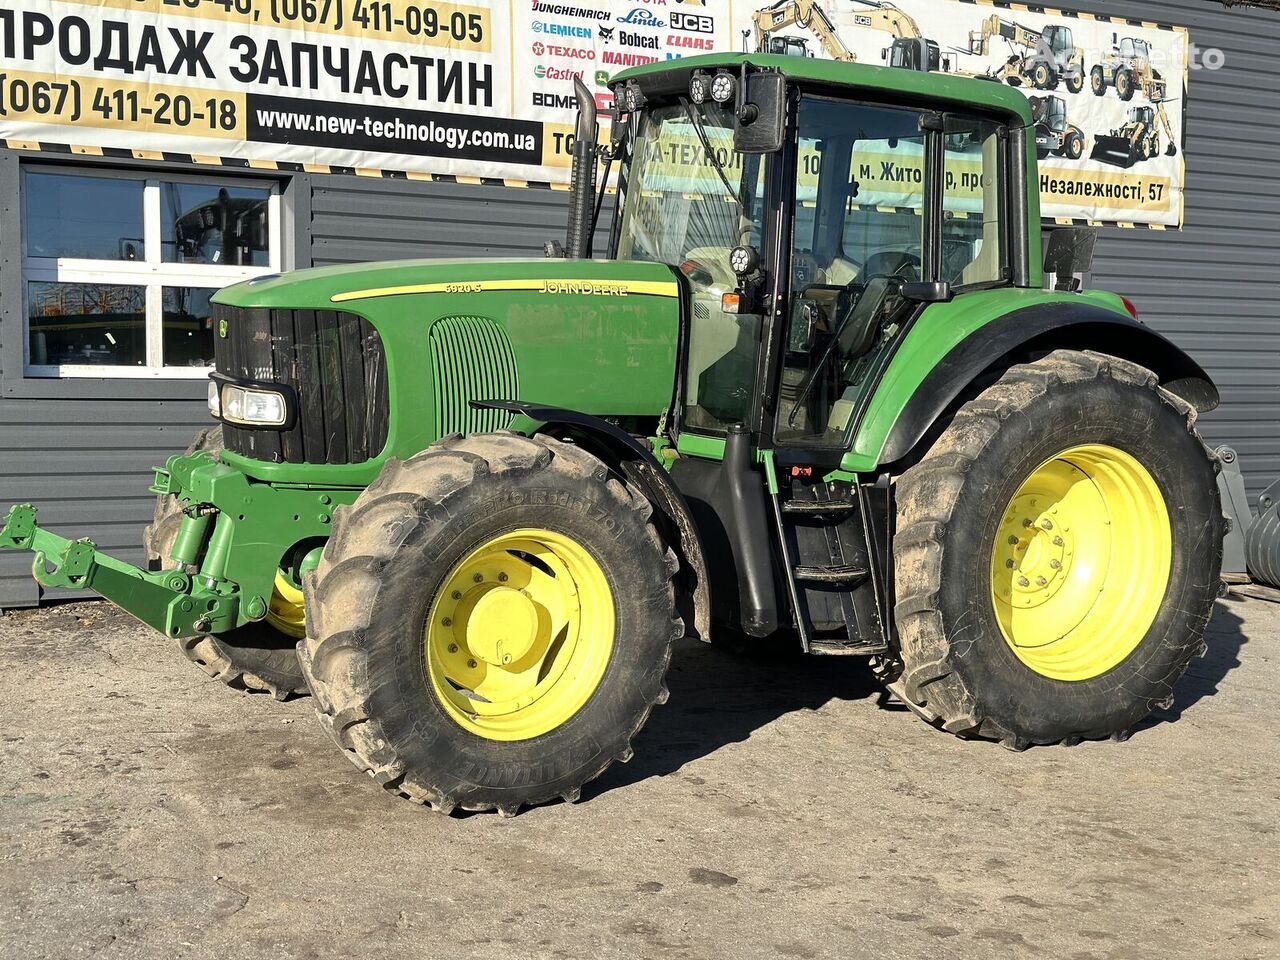 John Deere 6920 s wheel tractor